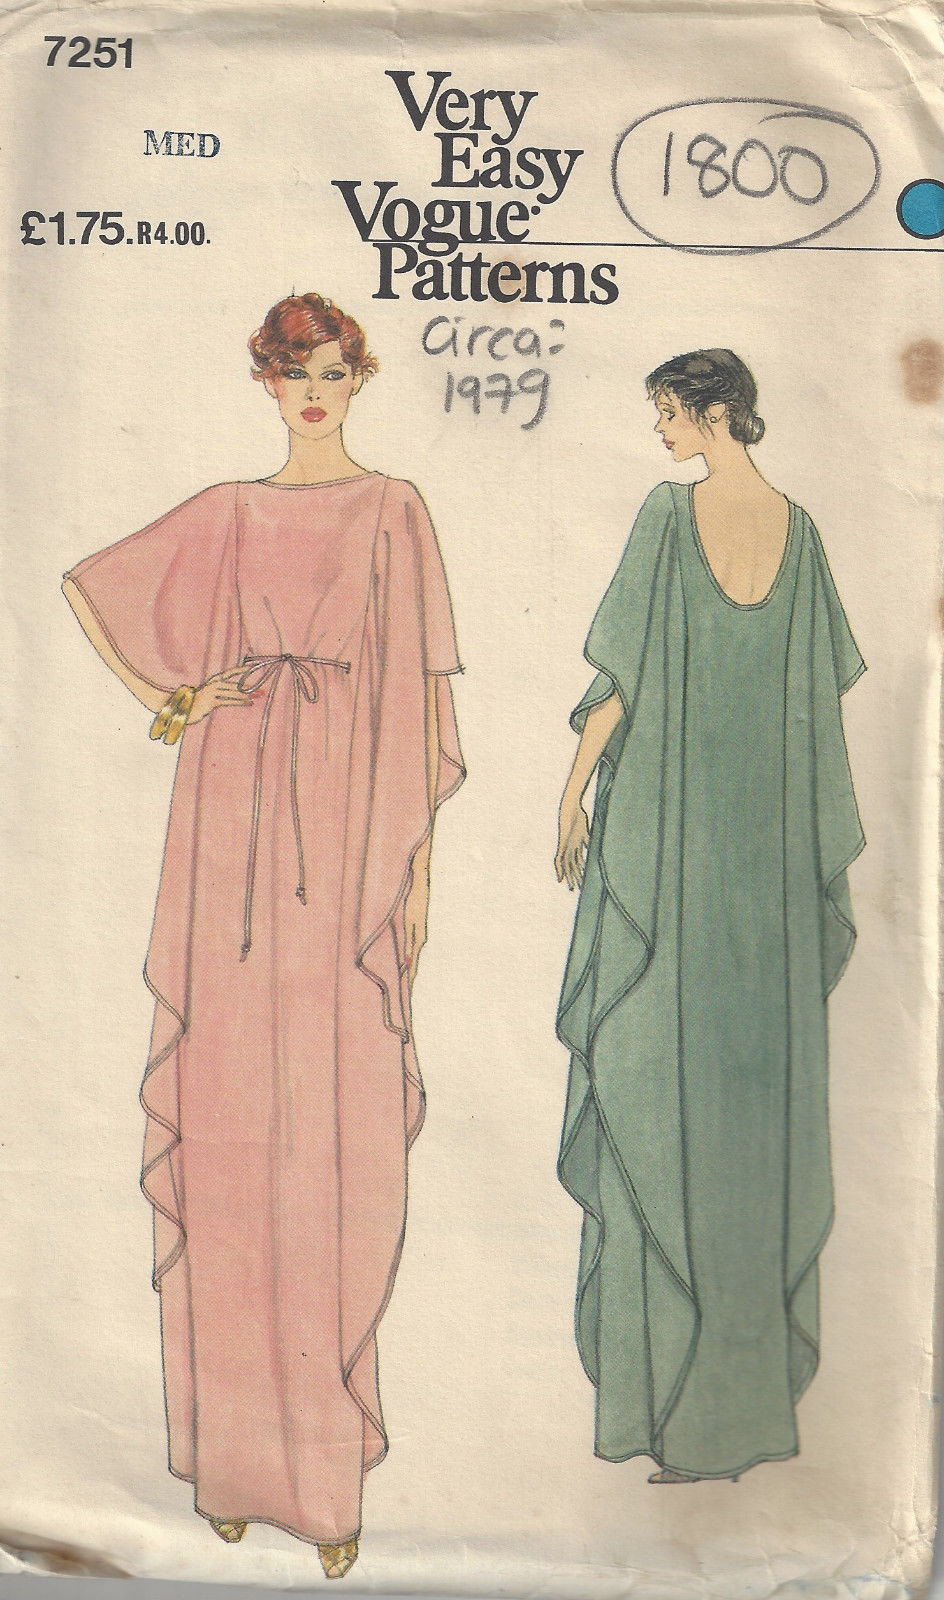 Vogart 293, Vintage Sewing Patterns